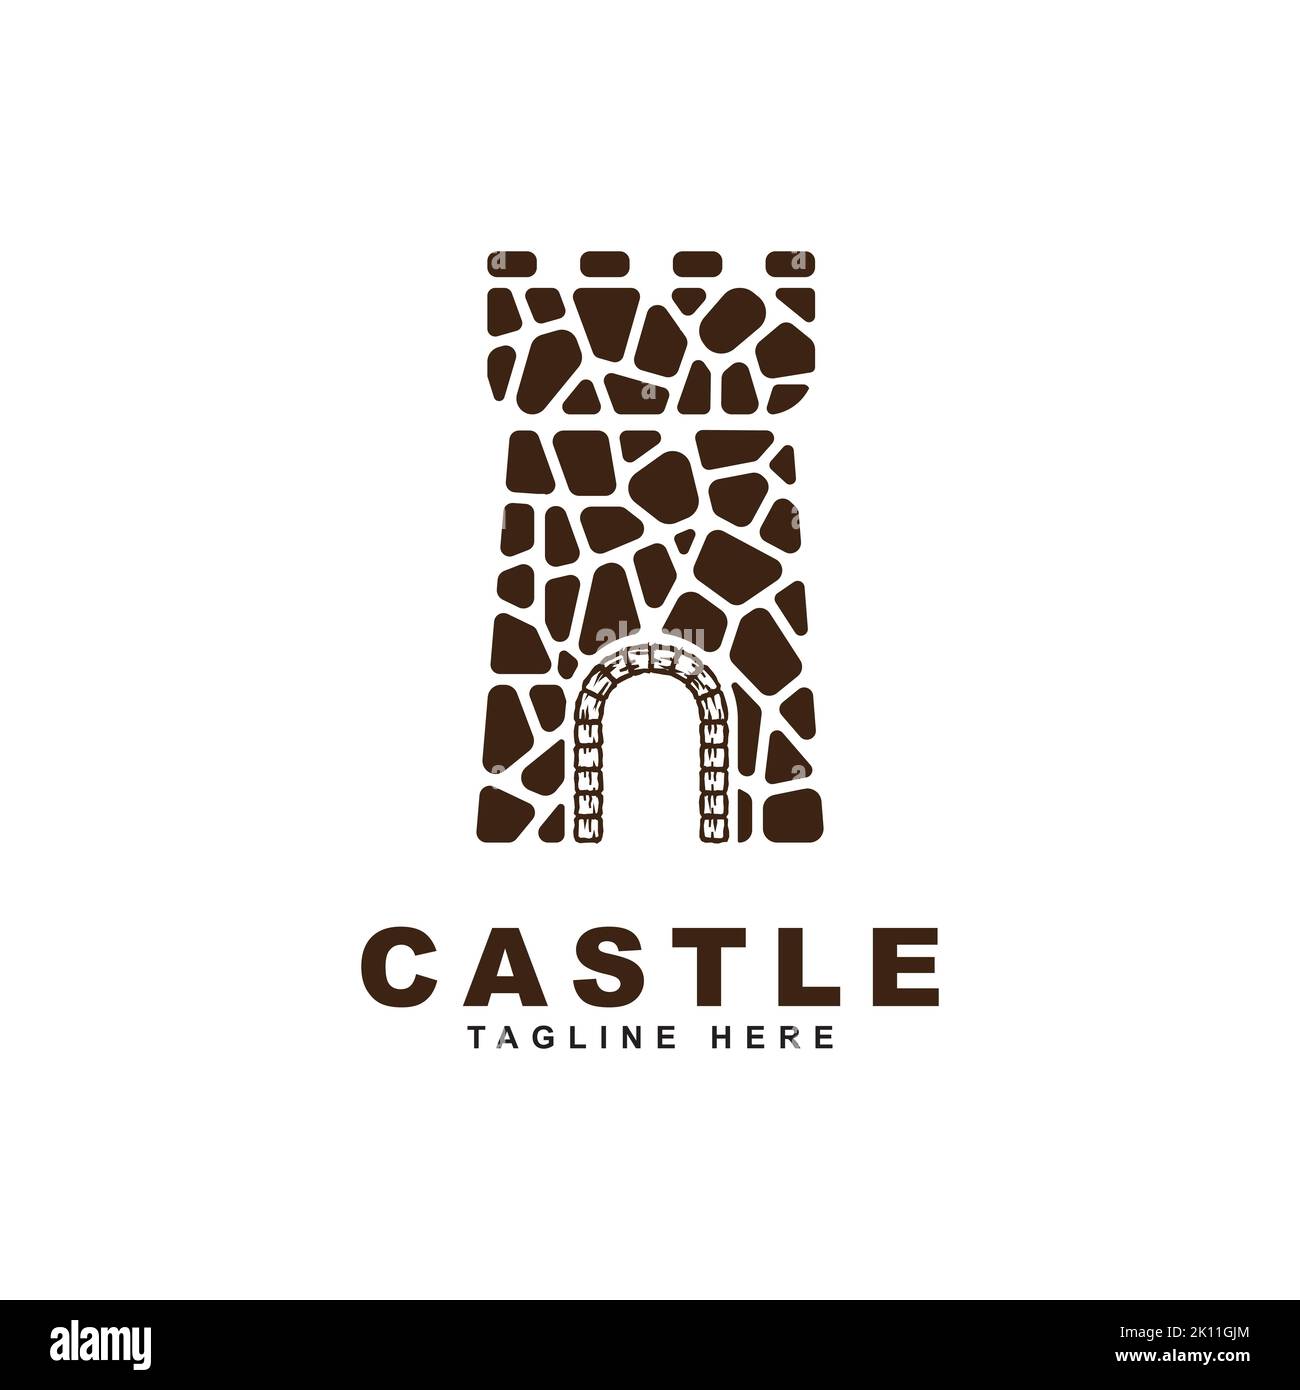 castle stone logo design vector template. Creative castle logo inspiration Stock Vector